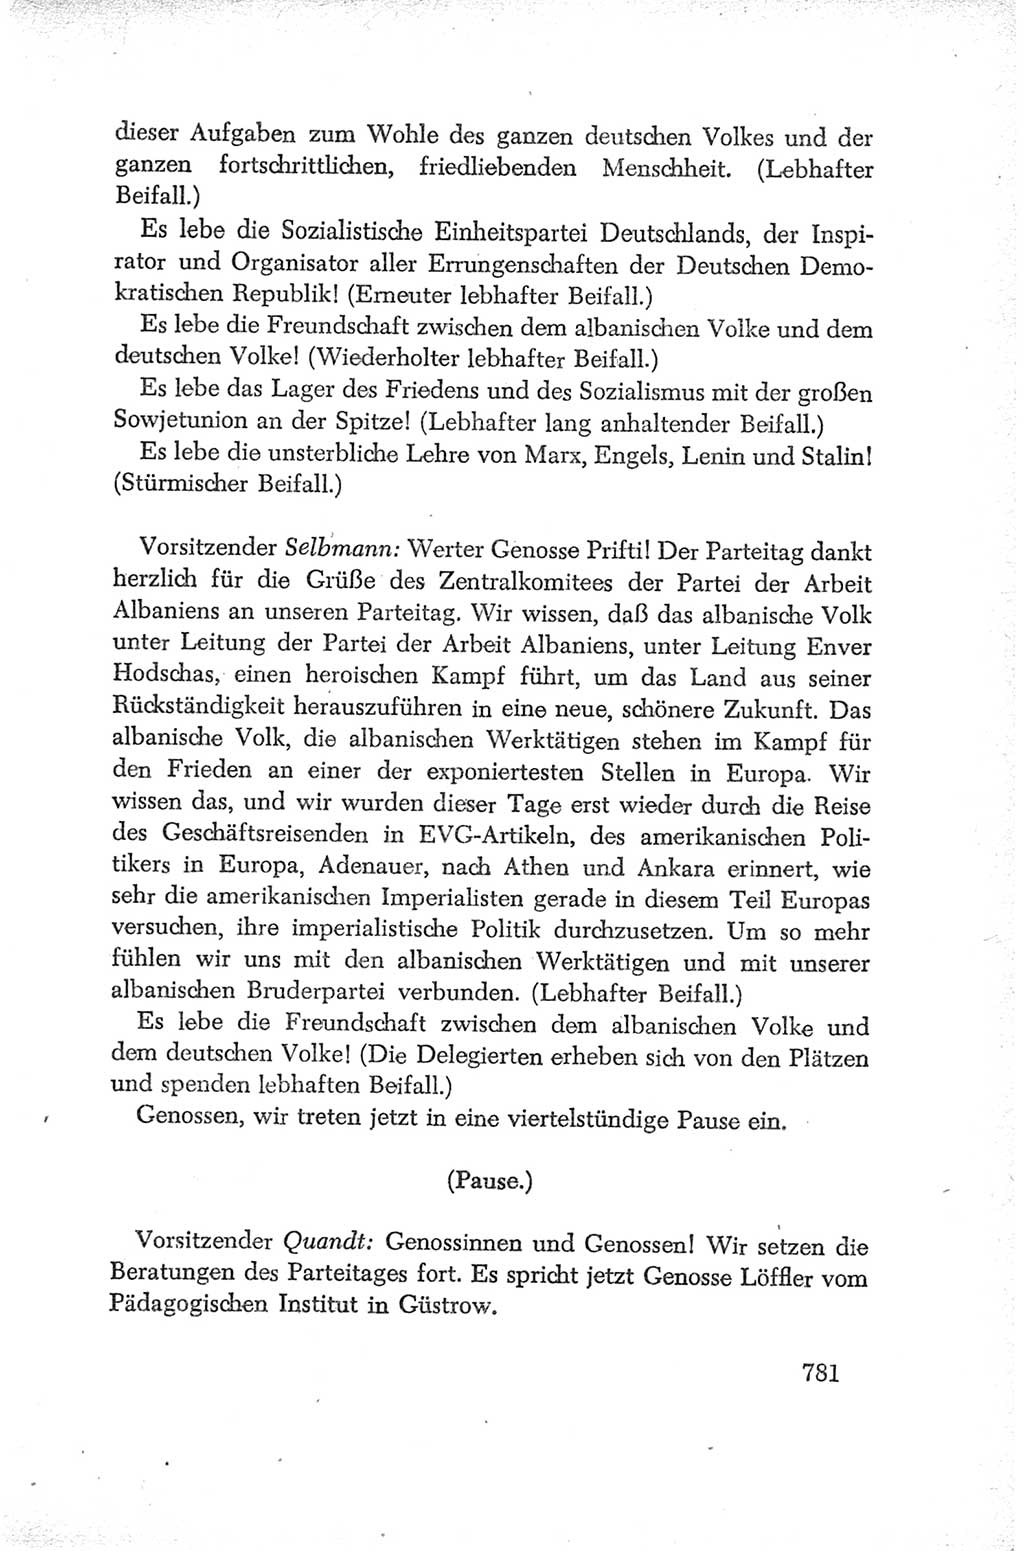 Protokoll der Verhandlungen des Ⅳ. Parteitages der Sozialistischen Einheitspartei Deutschlands (SED) [Deutsche Demokratische Republik (DDR)] 1954, Seite 781